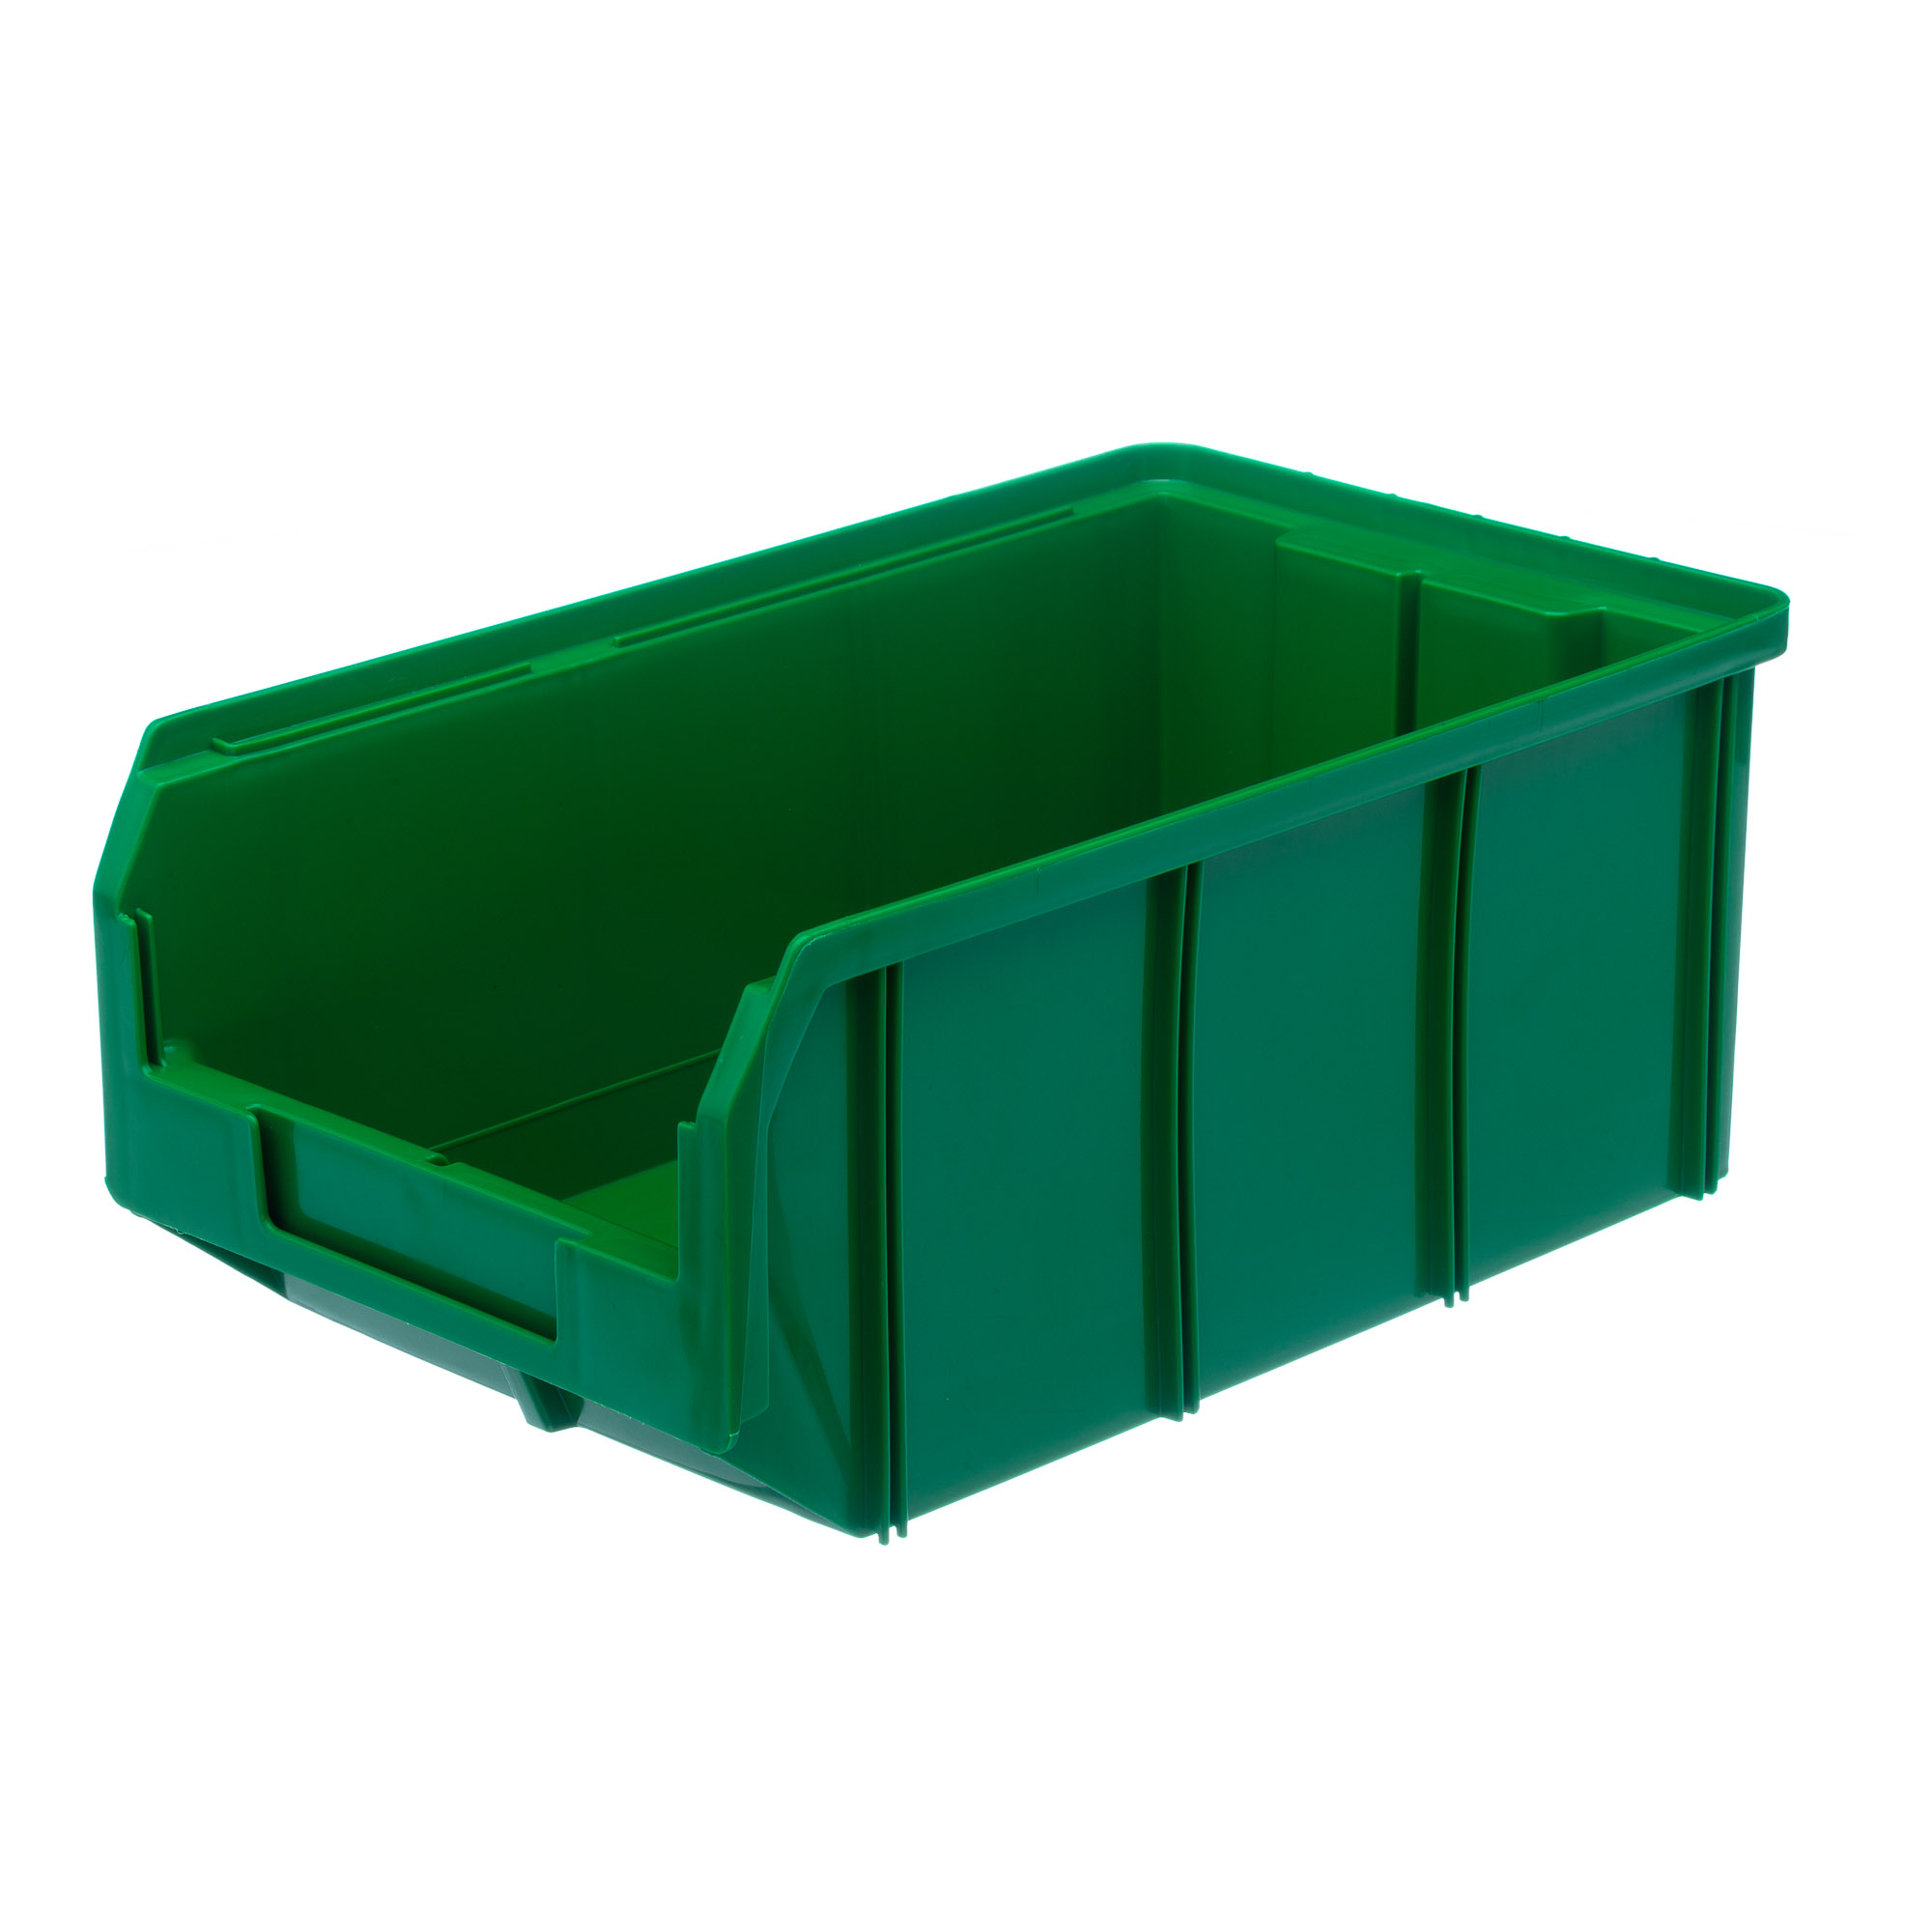 Пластиковый ящик Стелла-техник V-3-зеленый 342х207x143мм, 9,4 литра бокс пластиковый для хранения 28 ячеек 17 5×11×2 8 см